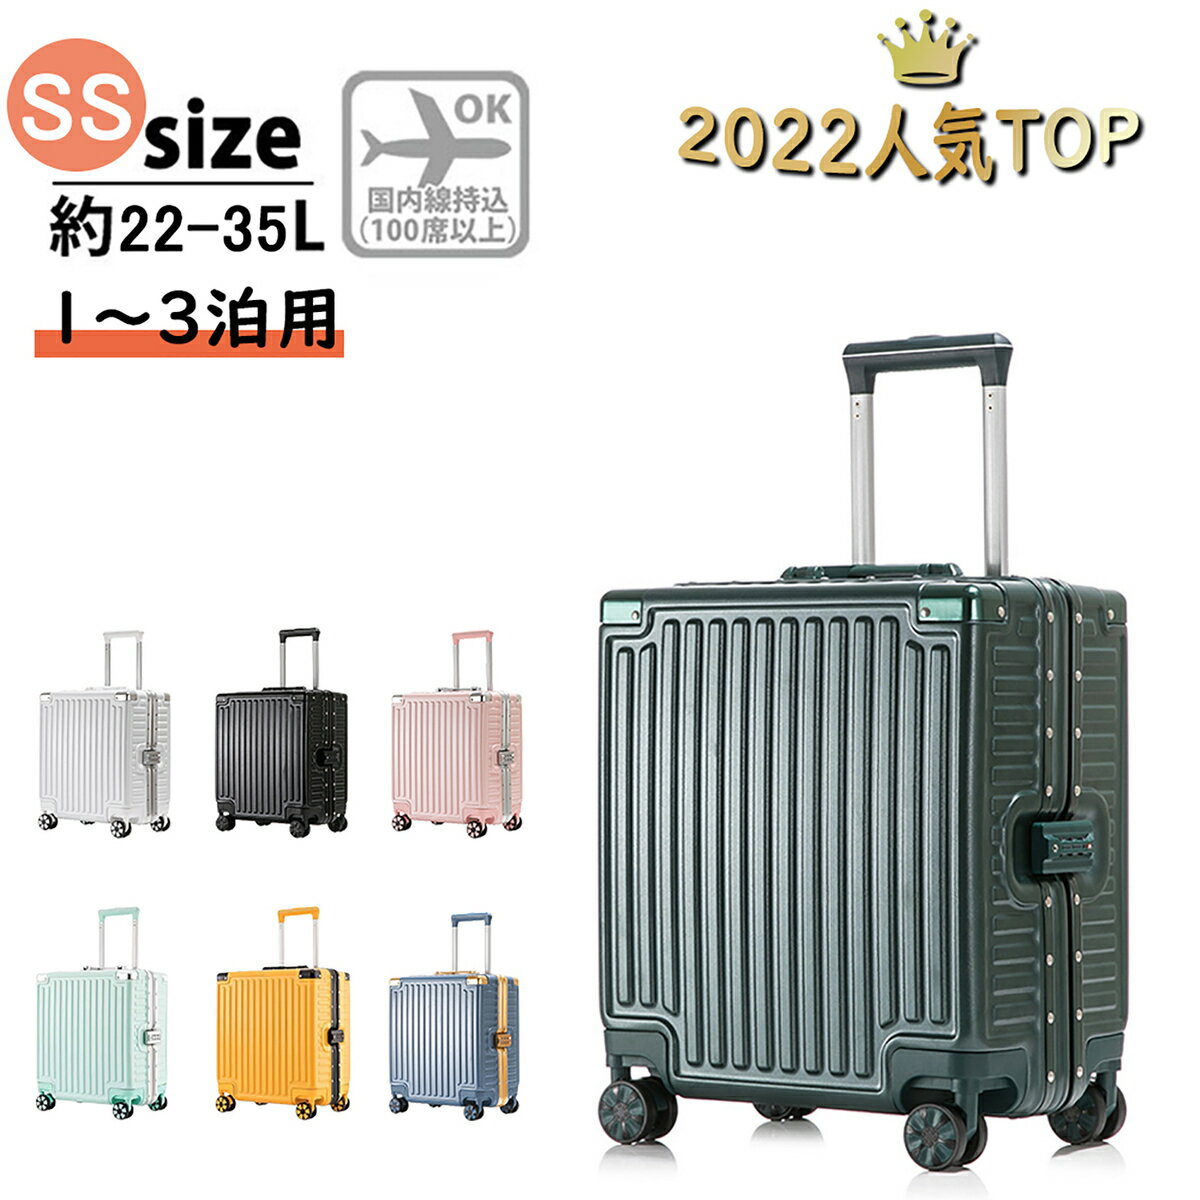 スーツケース 機内持込 キャリーケース キャリーバッグ 静音 軽量 ビジネス TSAロック 出張 シンプル おしゃれ SSサイズ SXY-002A